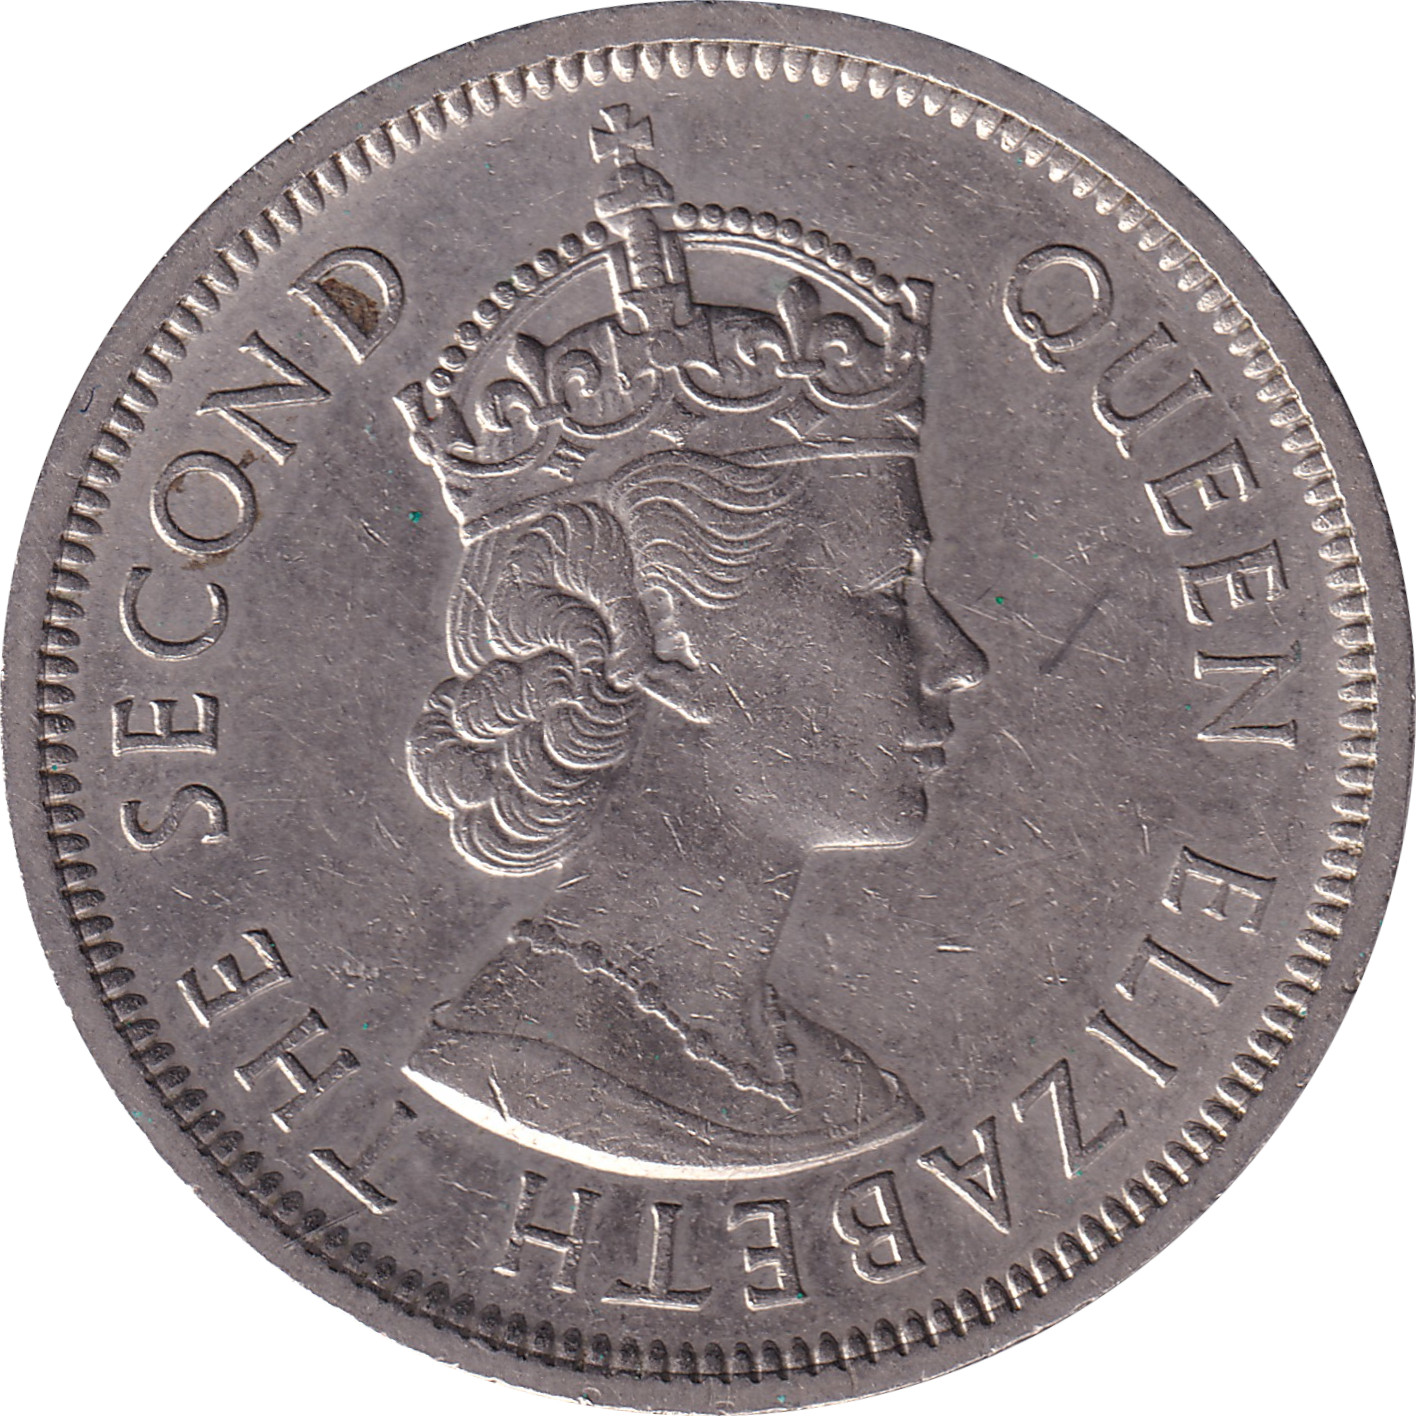 1 dollar - Elizabeth II - Buste colonial